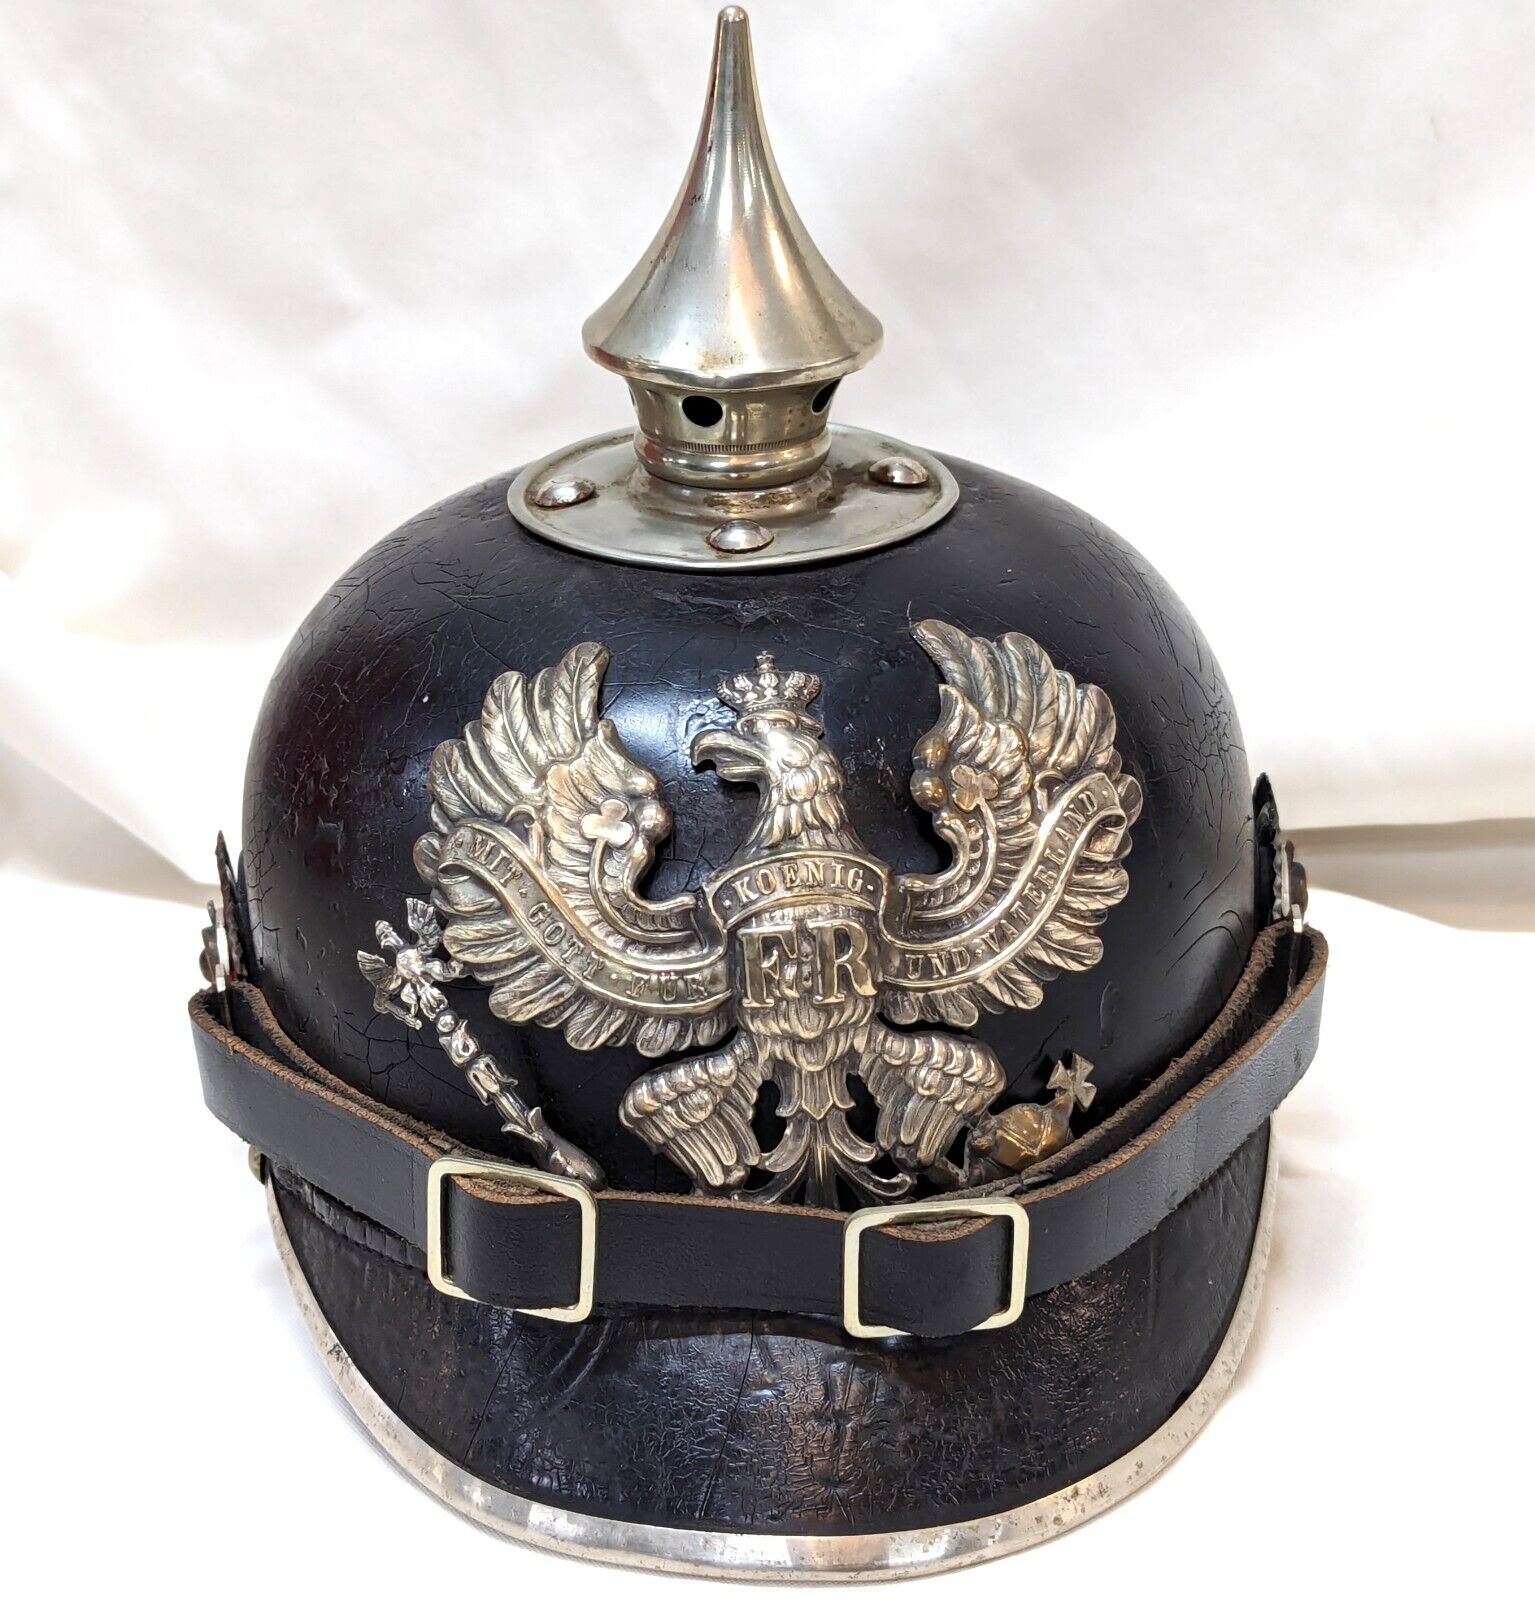 WW1 era German Kingdom of Prussia spiked helmet - Pioneer's enlisted Pickelhaube